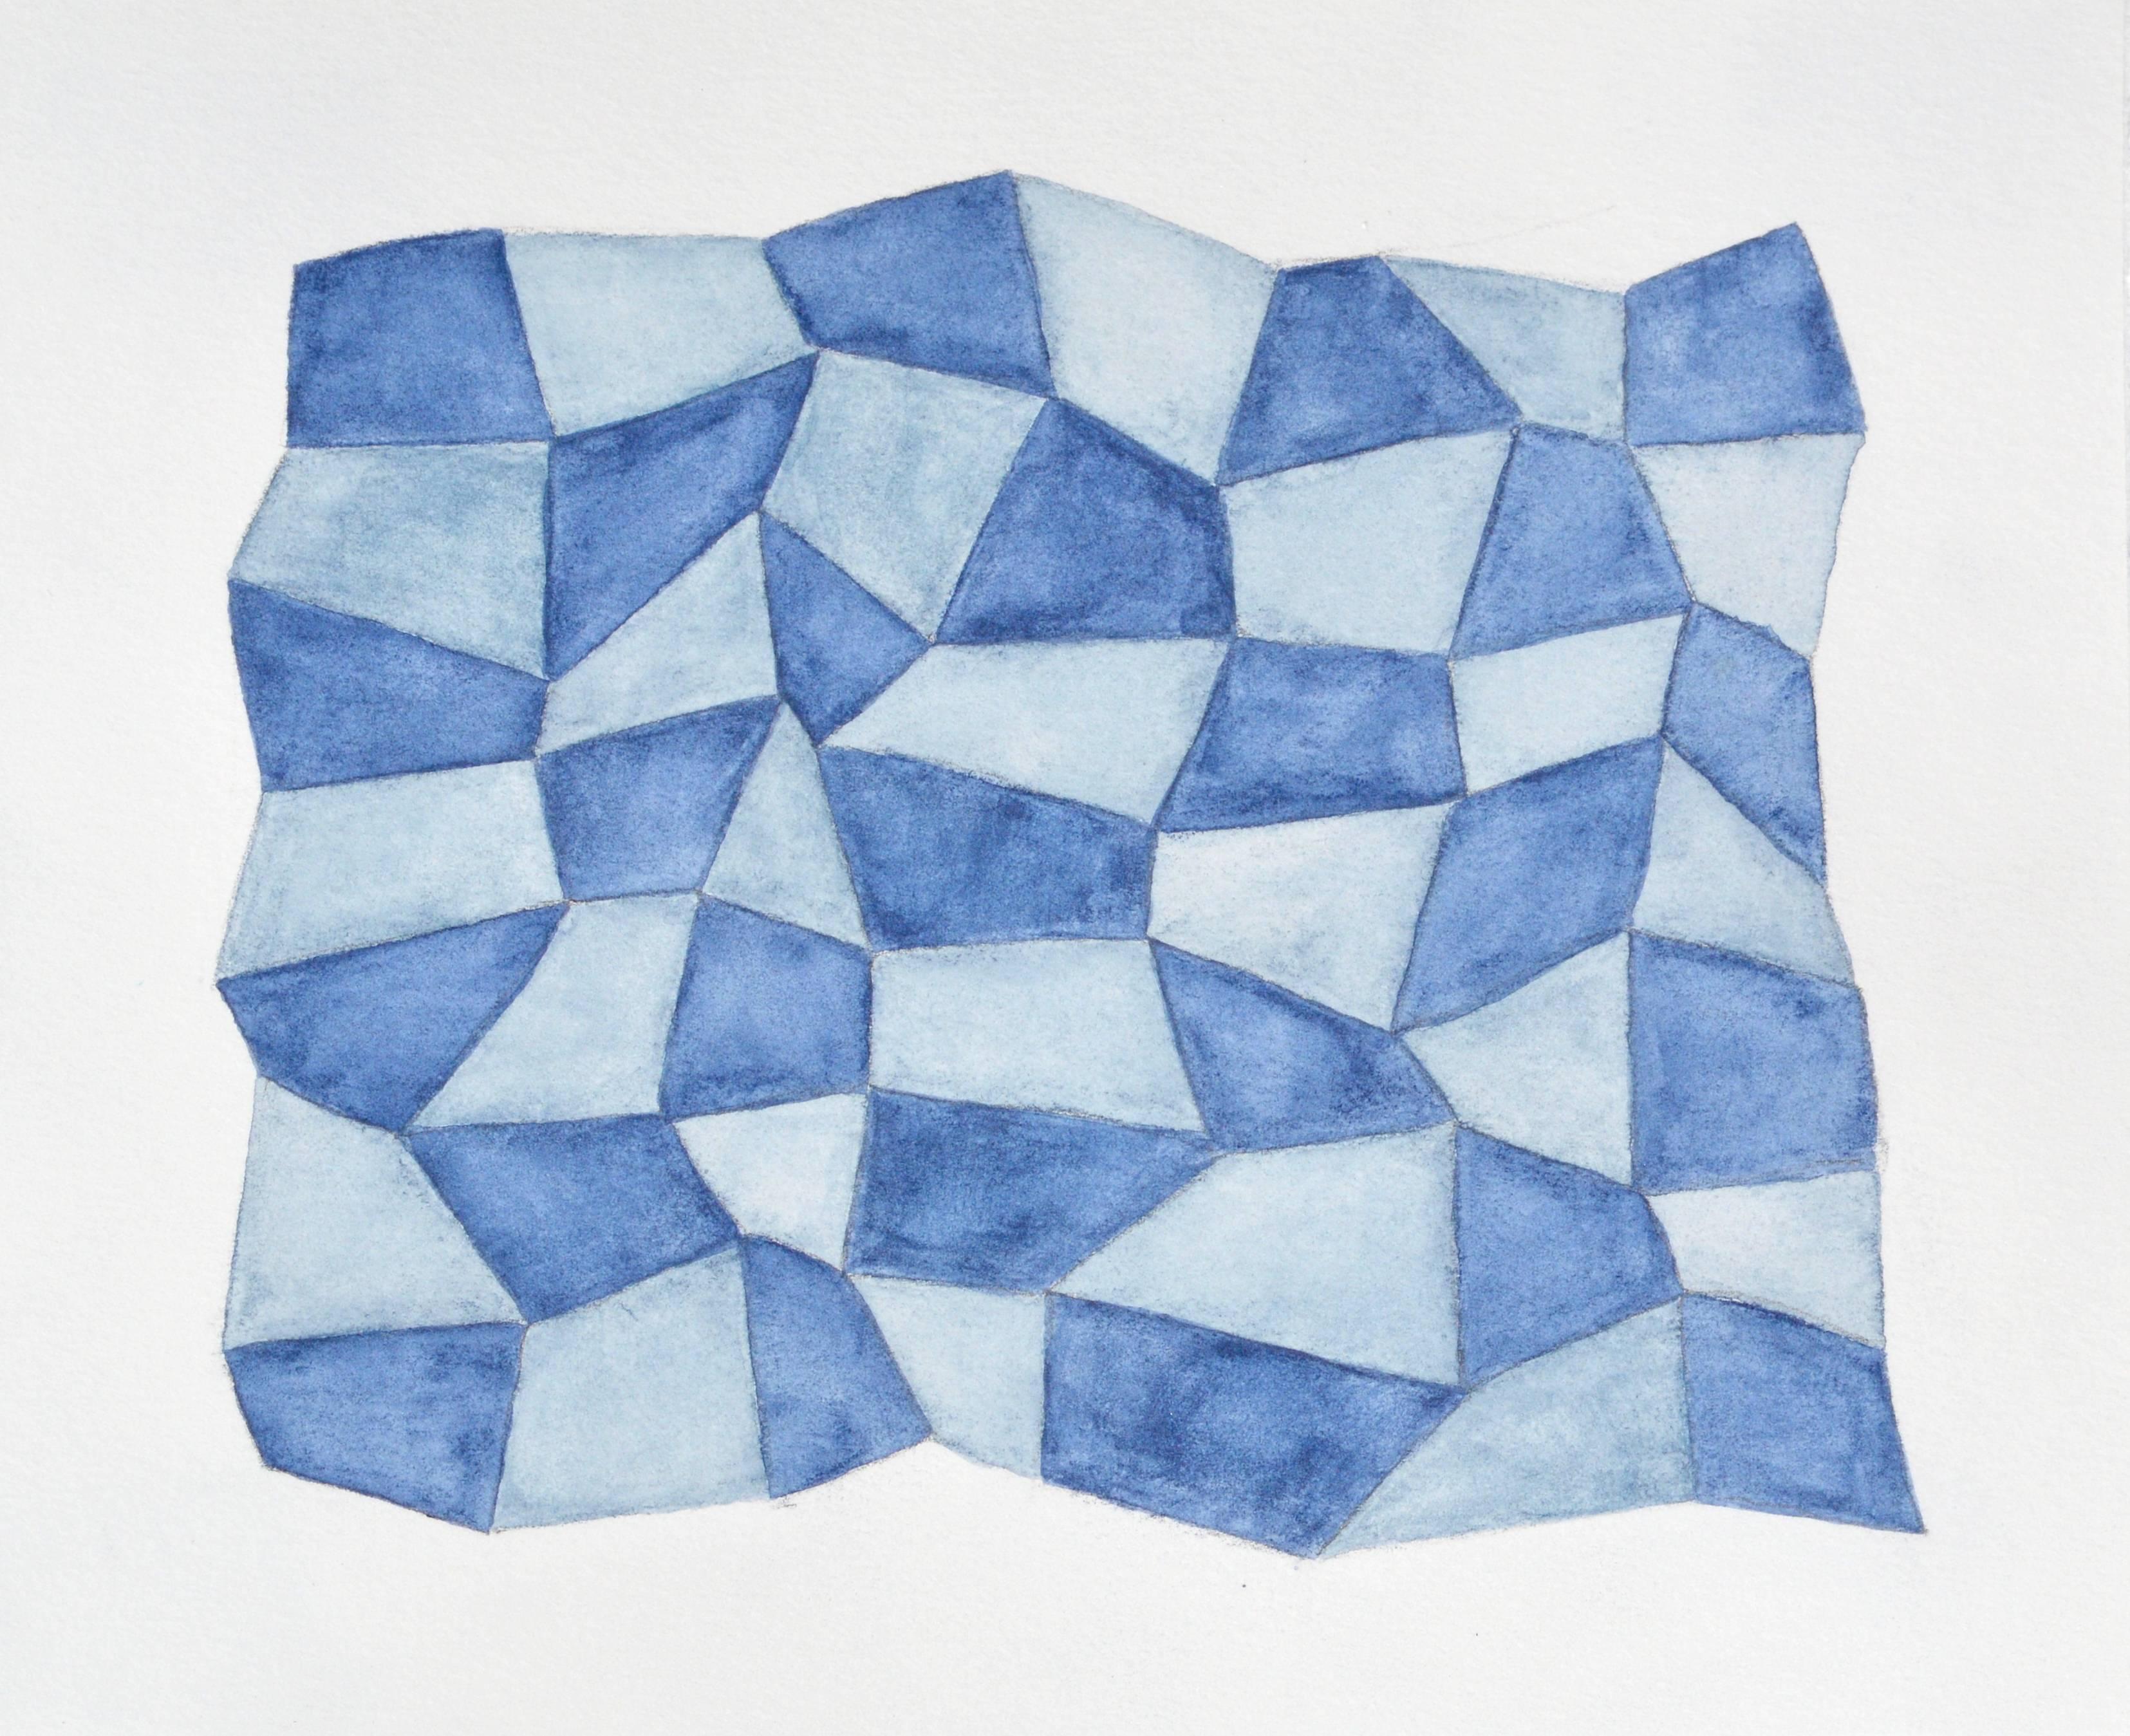 Karen Schiff, Field of Sorts III, 2014, Watercolor, Pencil, Graphite